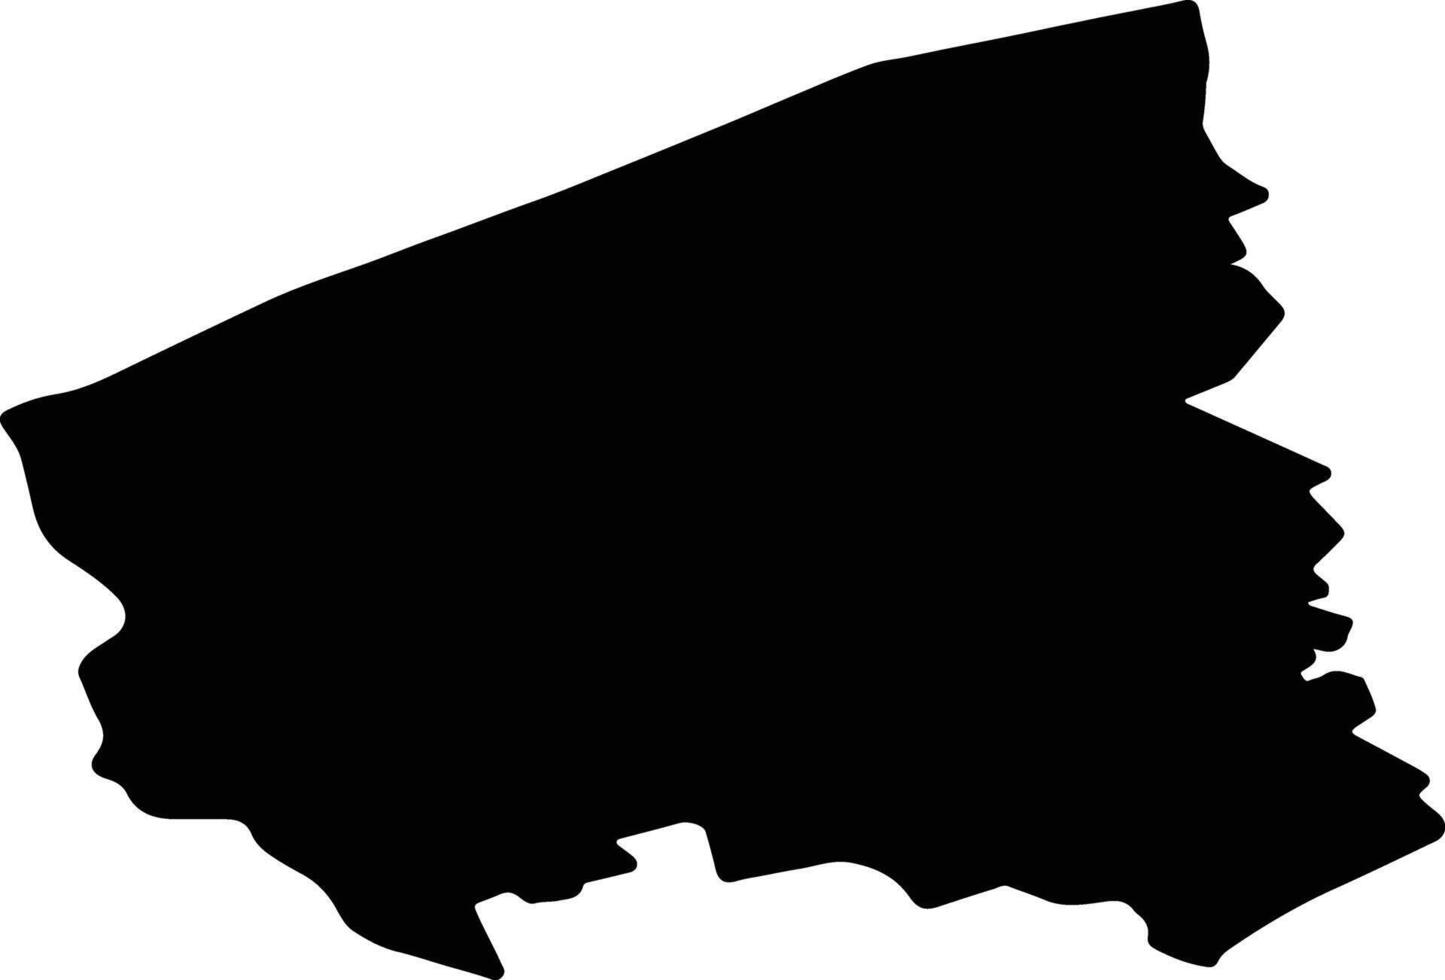 West Flanders Belgium silhouette map vector